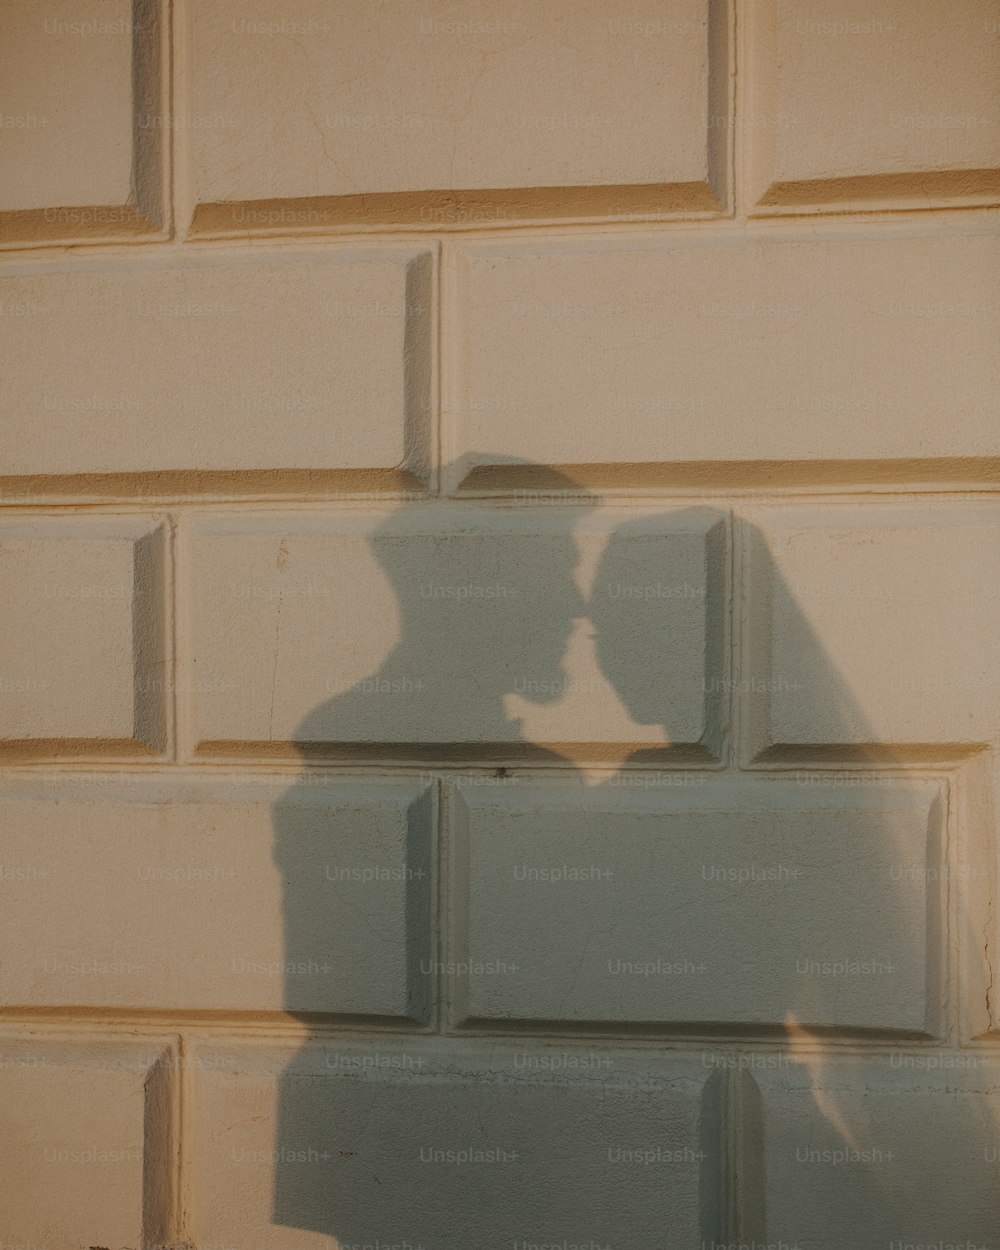 un'ombra di una persona su un muro di mattoni